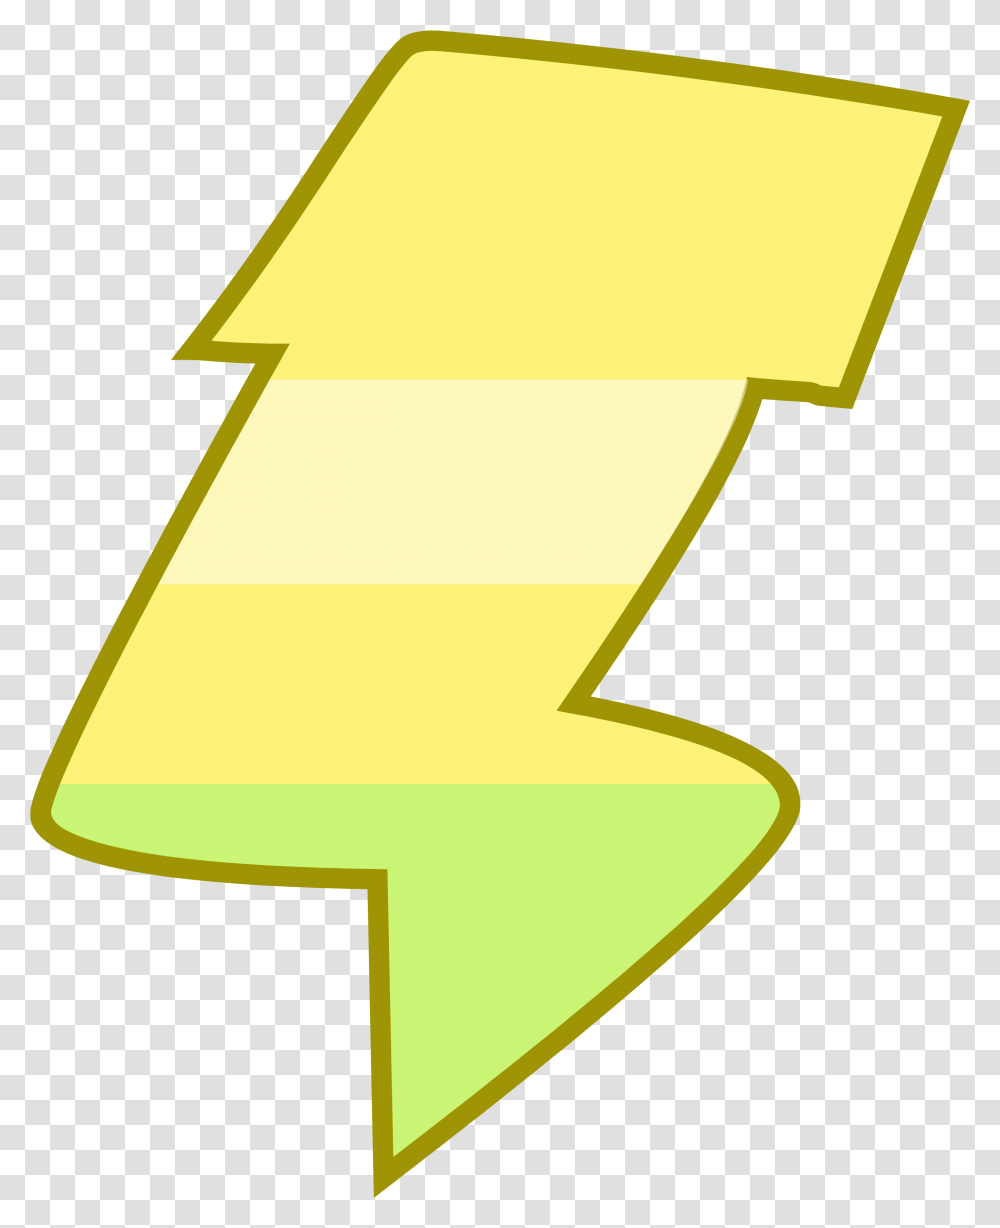 Lightning Bolt Icon Vertical, Number, Symbol, Text, Star Symbol Transparent Png